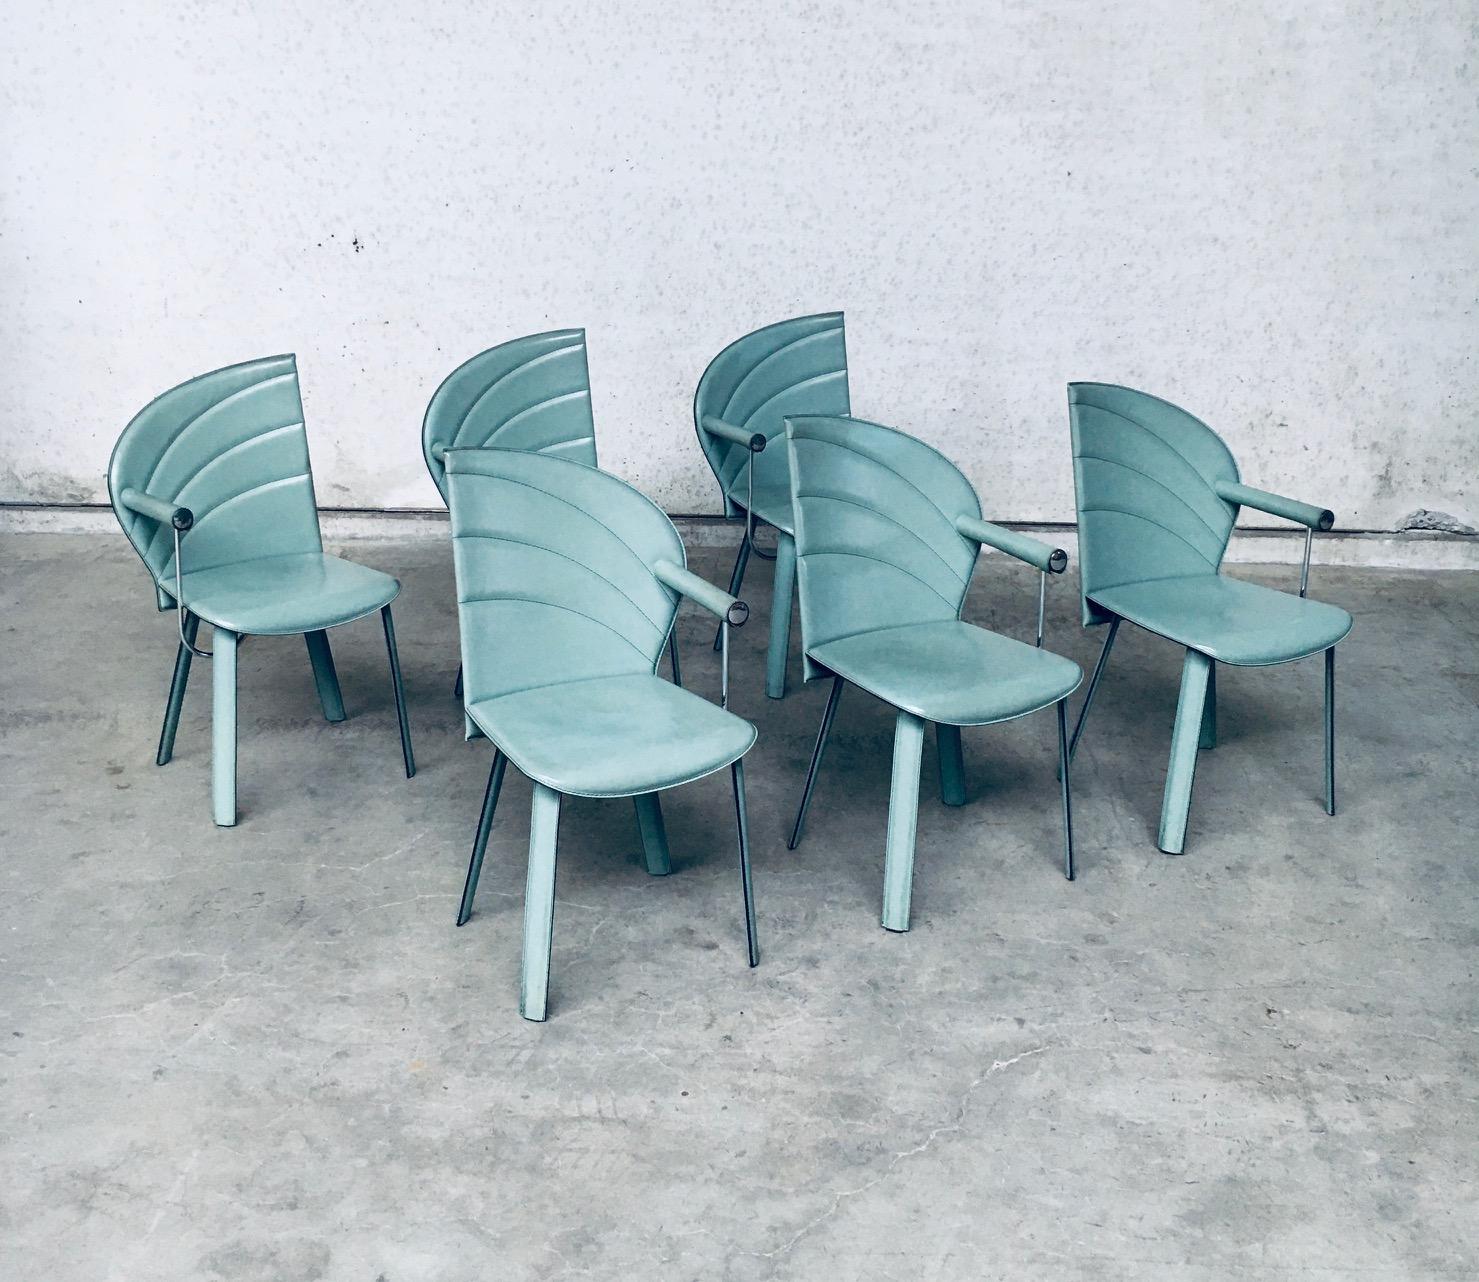 Vintage Postmodern Italian Design Leather covered Dining Chair set of 6 by Mario Morbidelli for Naos. Fabriqué en Italie, années 1980. Cuir de couleur vert pétrole sur structure métallique. 3 chaises ont un accoudoir gauche, 3 chaises ont un